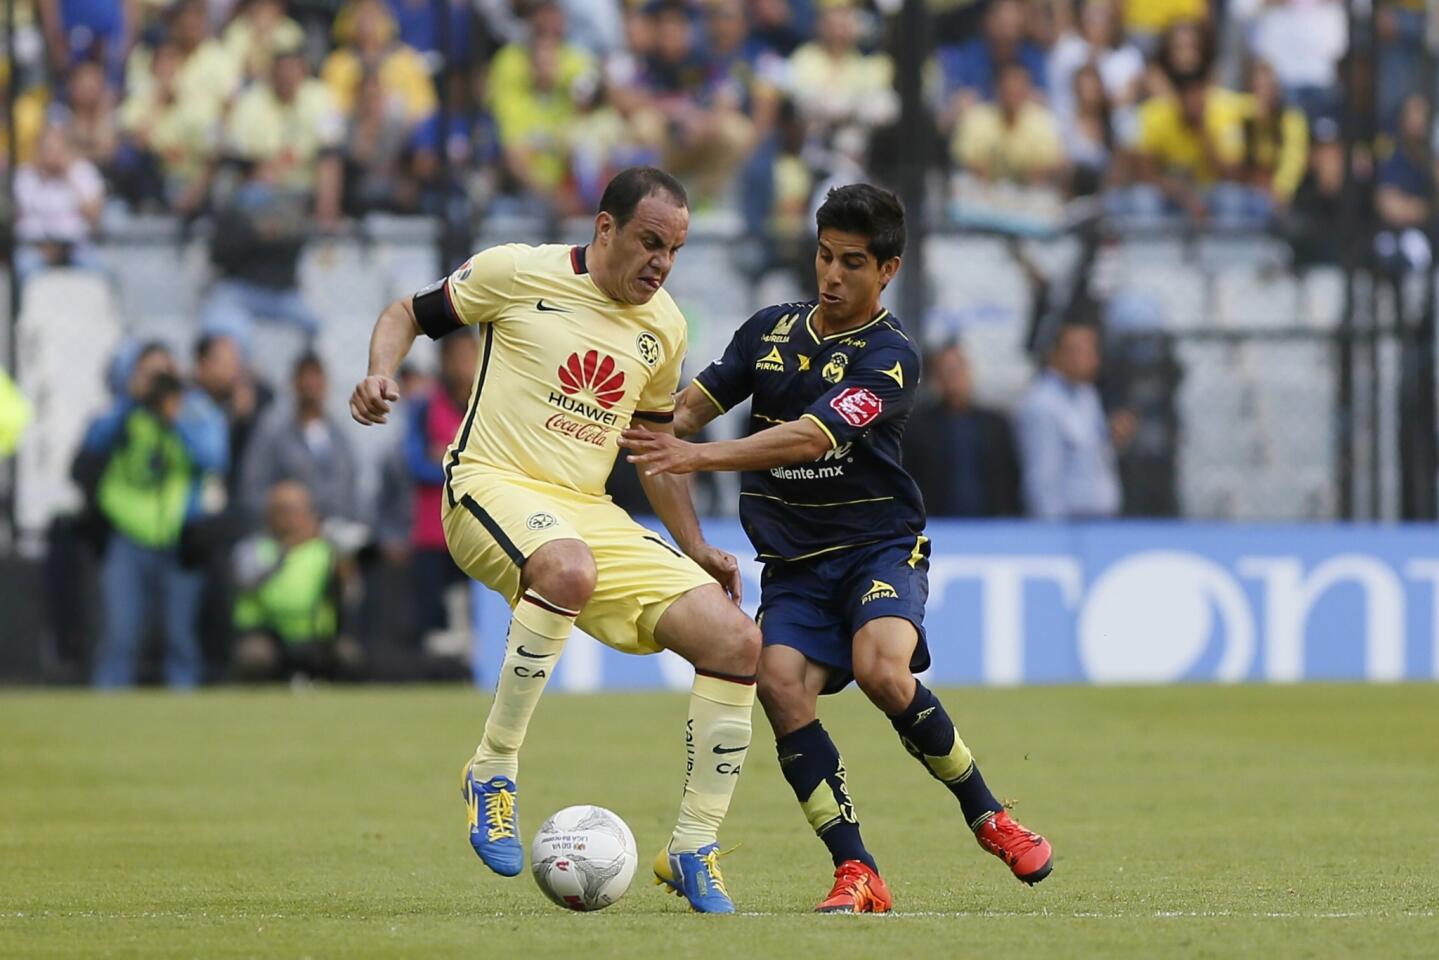 El jugador del América, Cuauhtémoc Blanco (i) disputa el balón con Jorge Zárate (d) de Monarcas, durante un partido de la jornada 9 del Torneo Clausura del fútbol mexicano realizado en el Estadio Azteca en Ciudad de México.